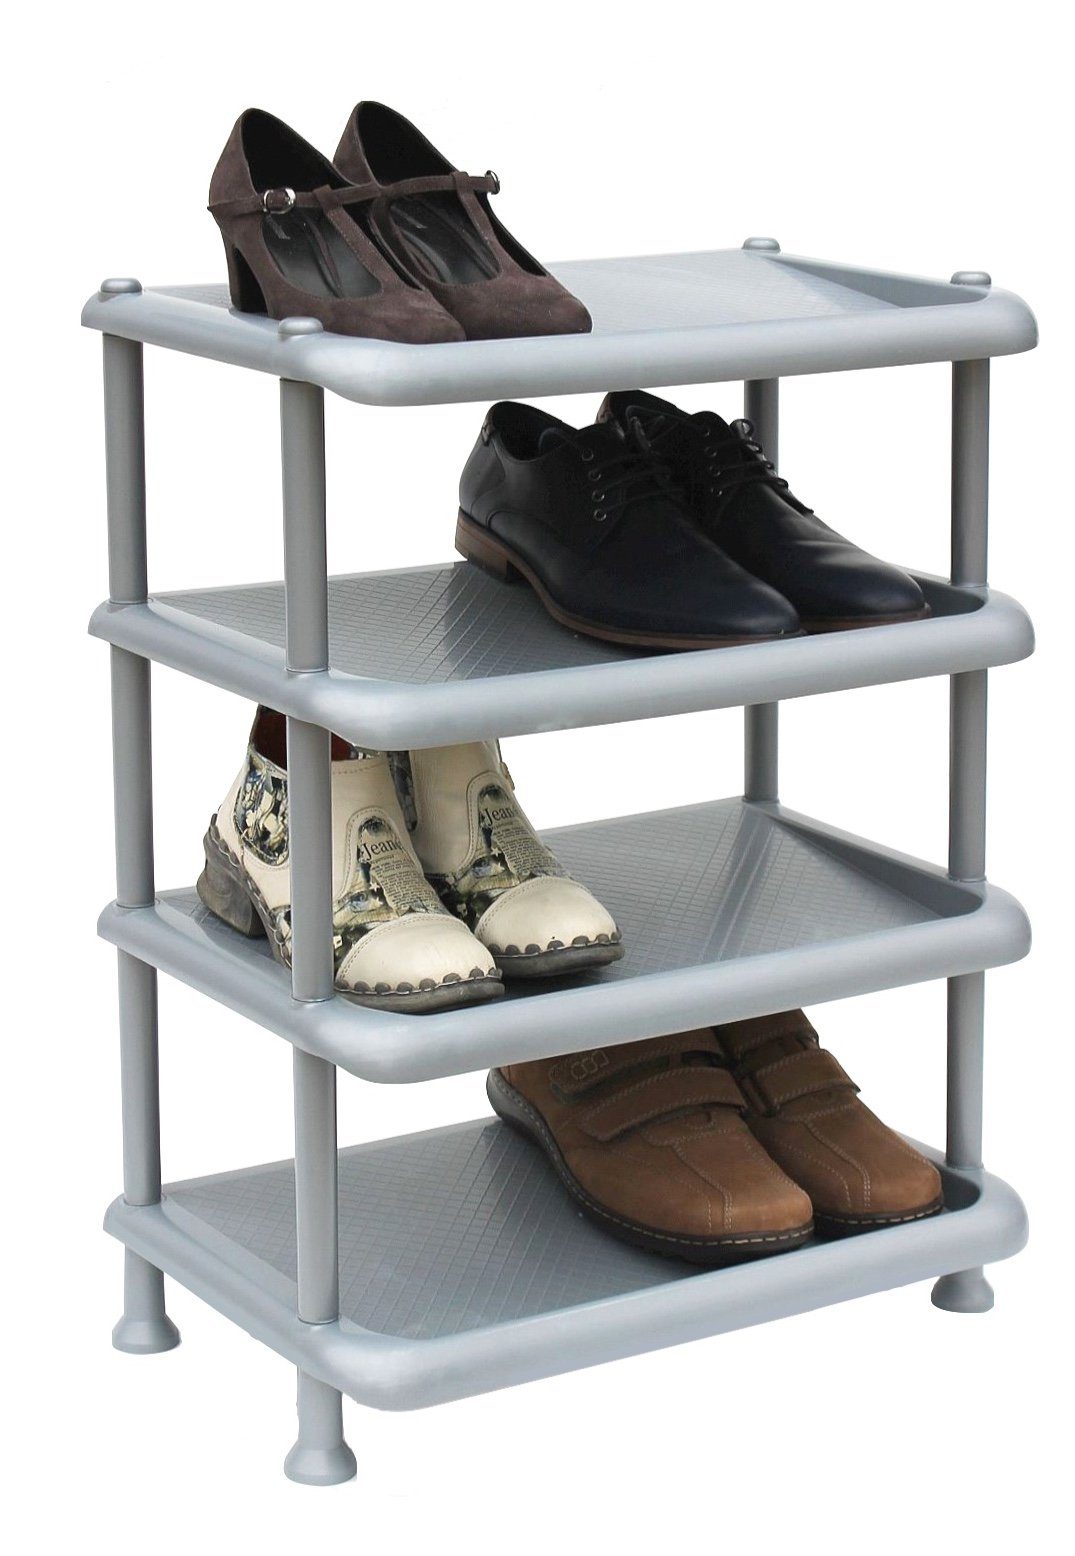 DanDiBo Schuhregal Schuhregal Kunststoff 93873 Stapelbar Schuhablage Offen  Schuhständer mit 4 Ebenen Grau Schuhschrank | Schuhregale